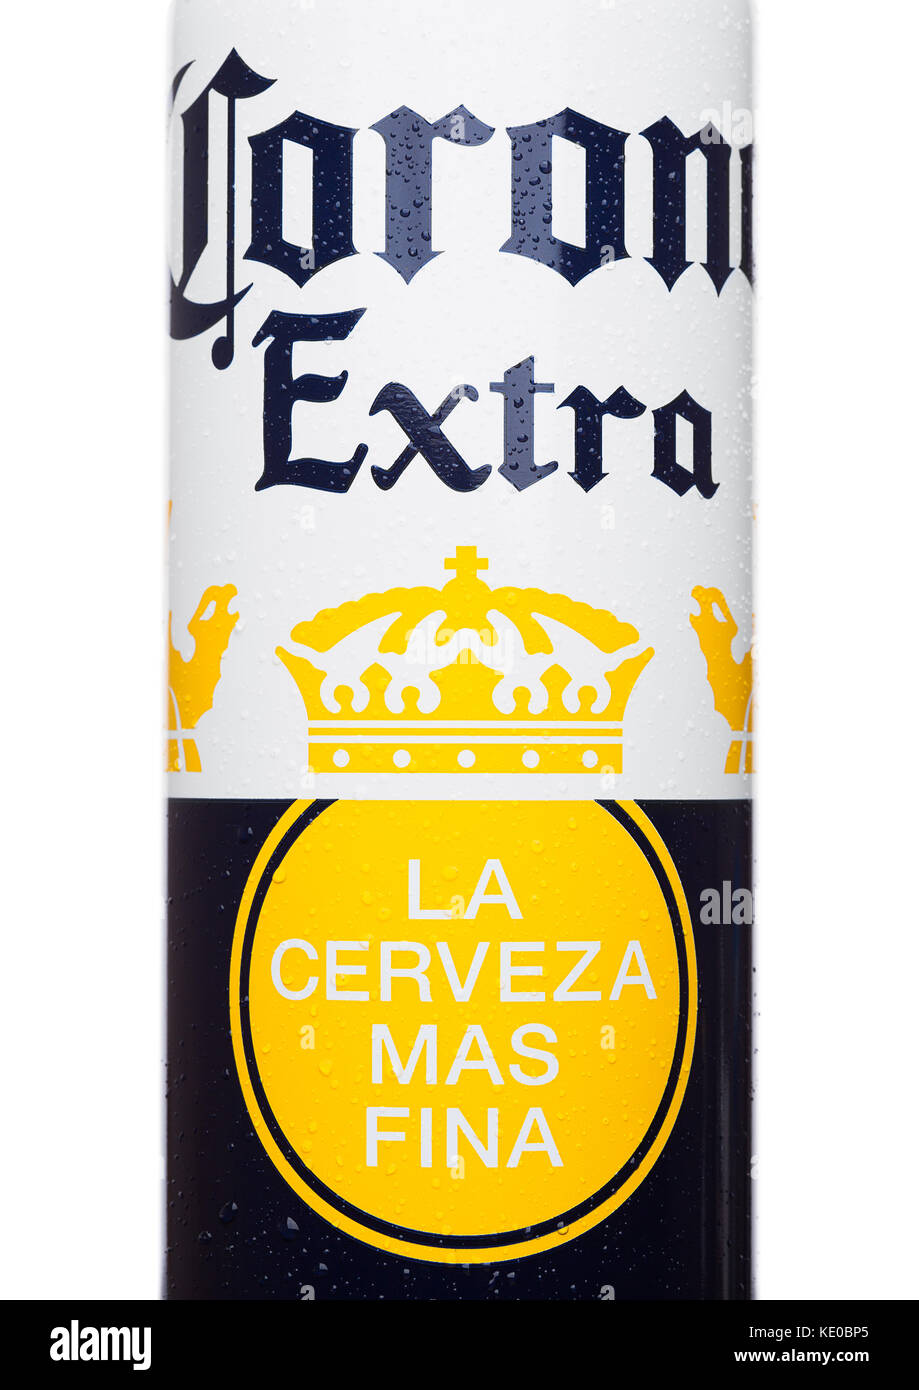 LONDRES, REINO UNIDO - 22 DE JUNIO de 2017: Botella de aluminio de Cerveza Corona Extra sobre fondo blanco. Cerveza importada más popular en los Estados Unidos. Edición limitada Foto de stock